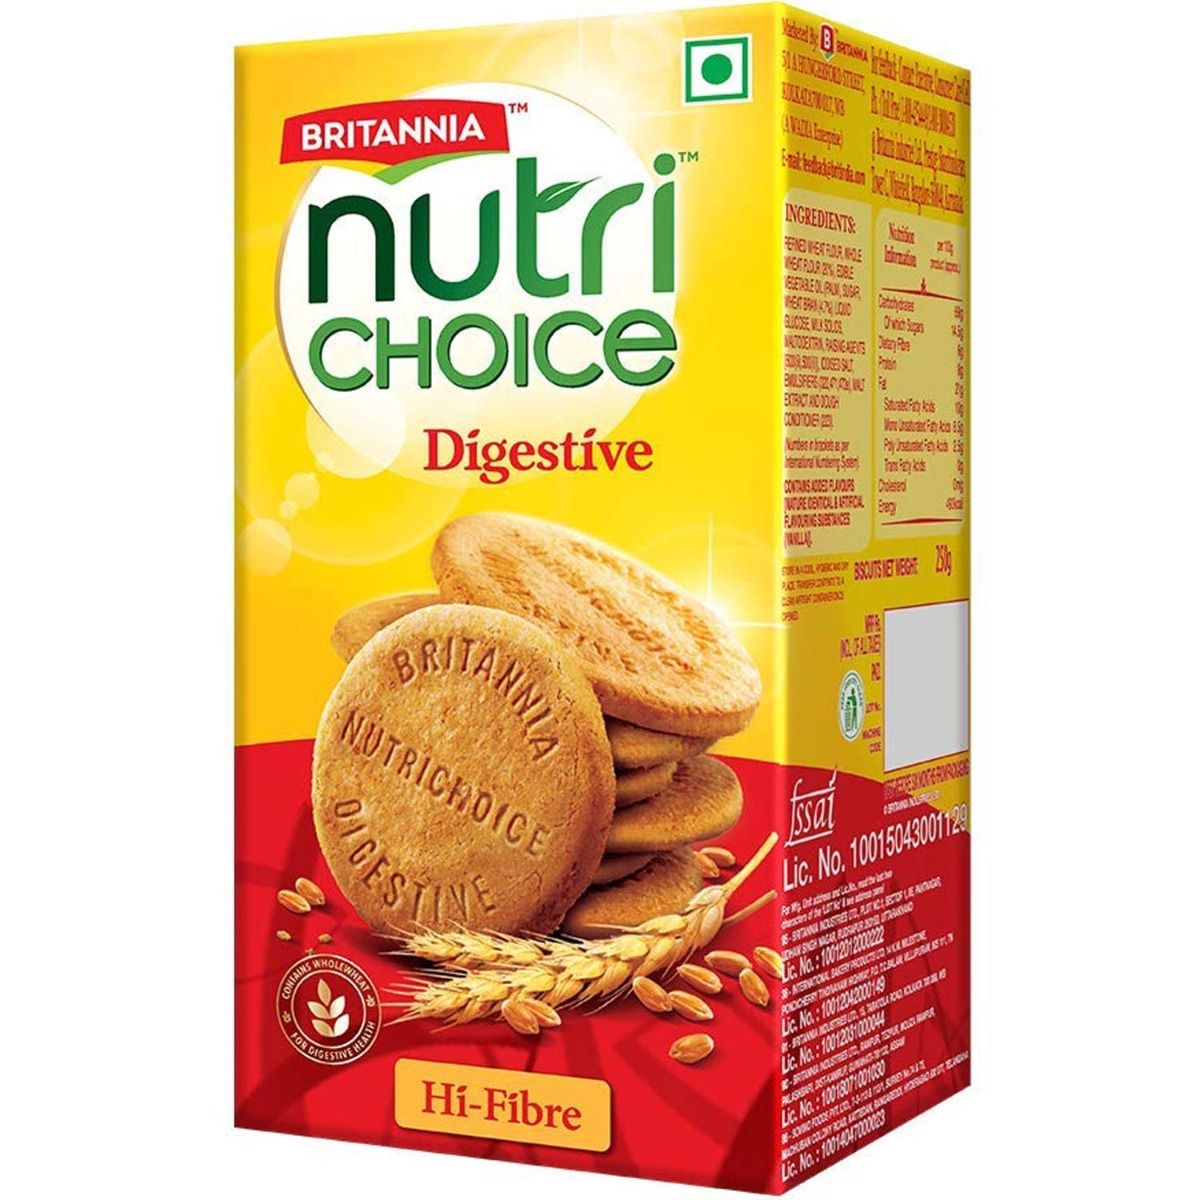 Britannia Nutrichoice Digestive Biscuits, 250 gm, Pack of 1 